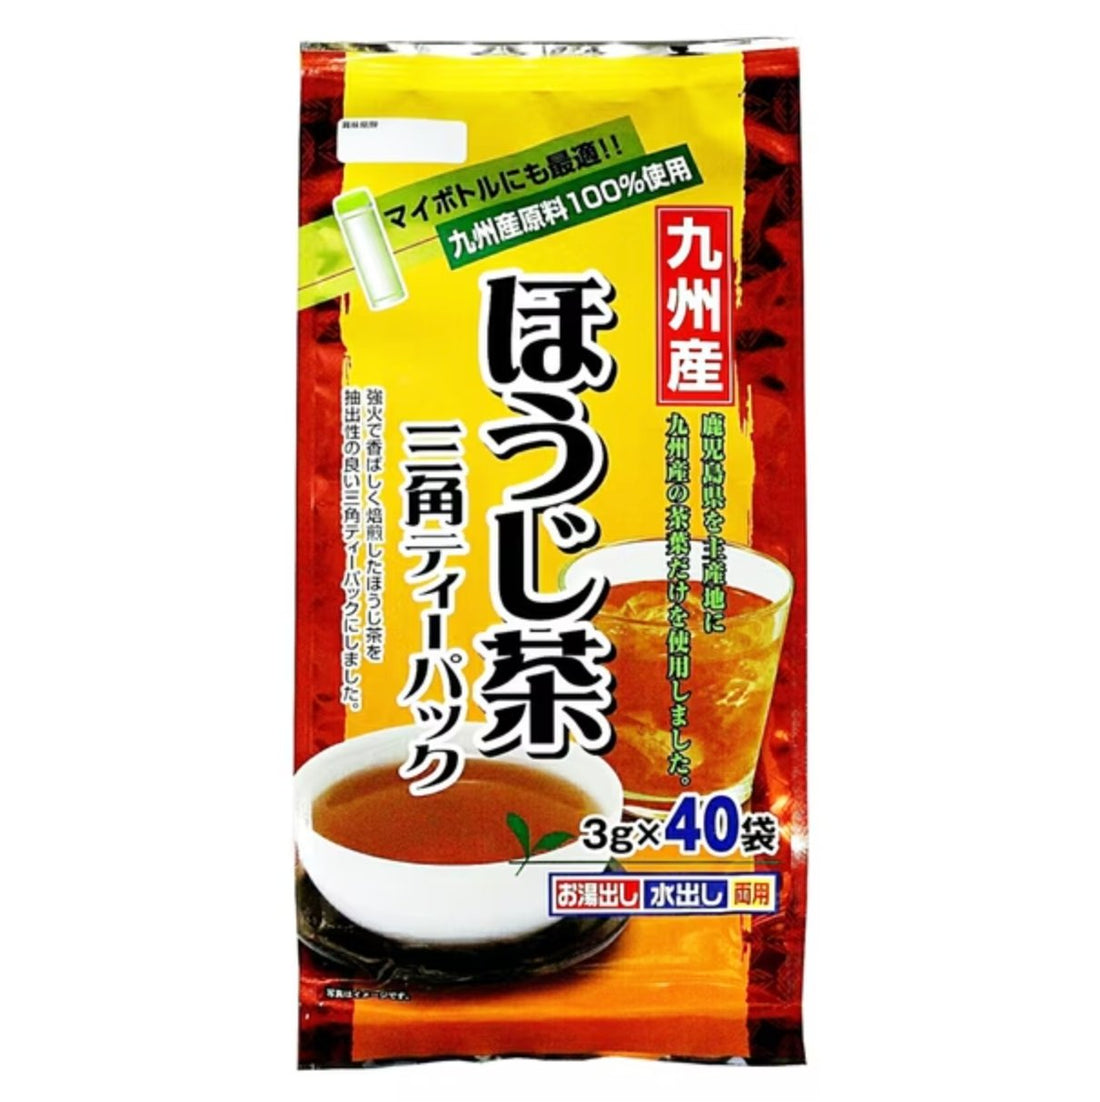 Juroen Kyushu Hojicha Triangular Tea Pack 3g x 40 bags - NihonMura